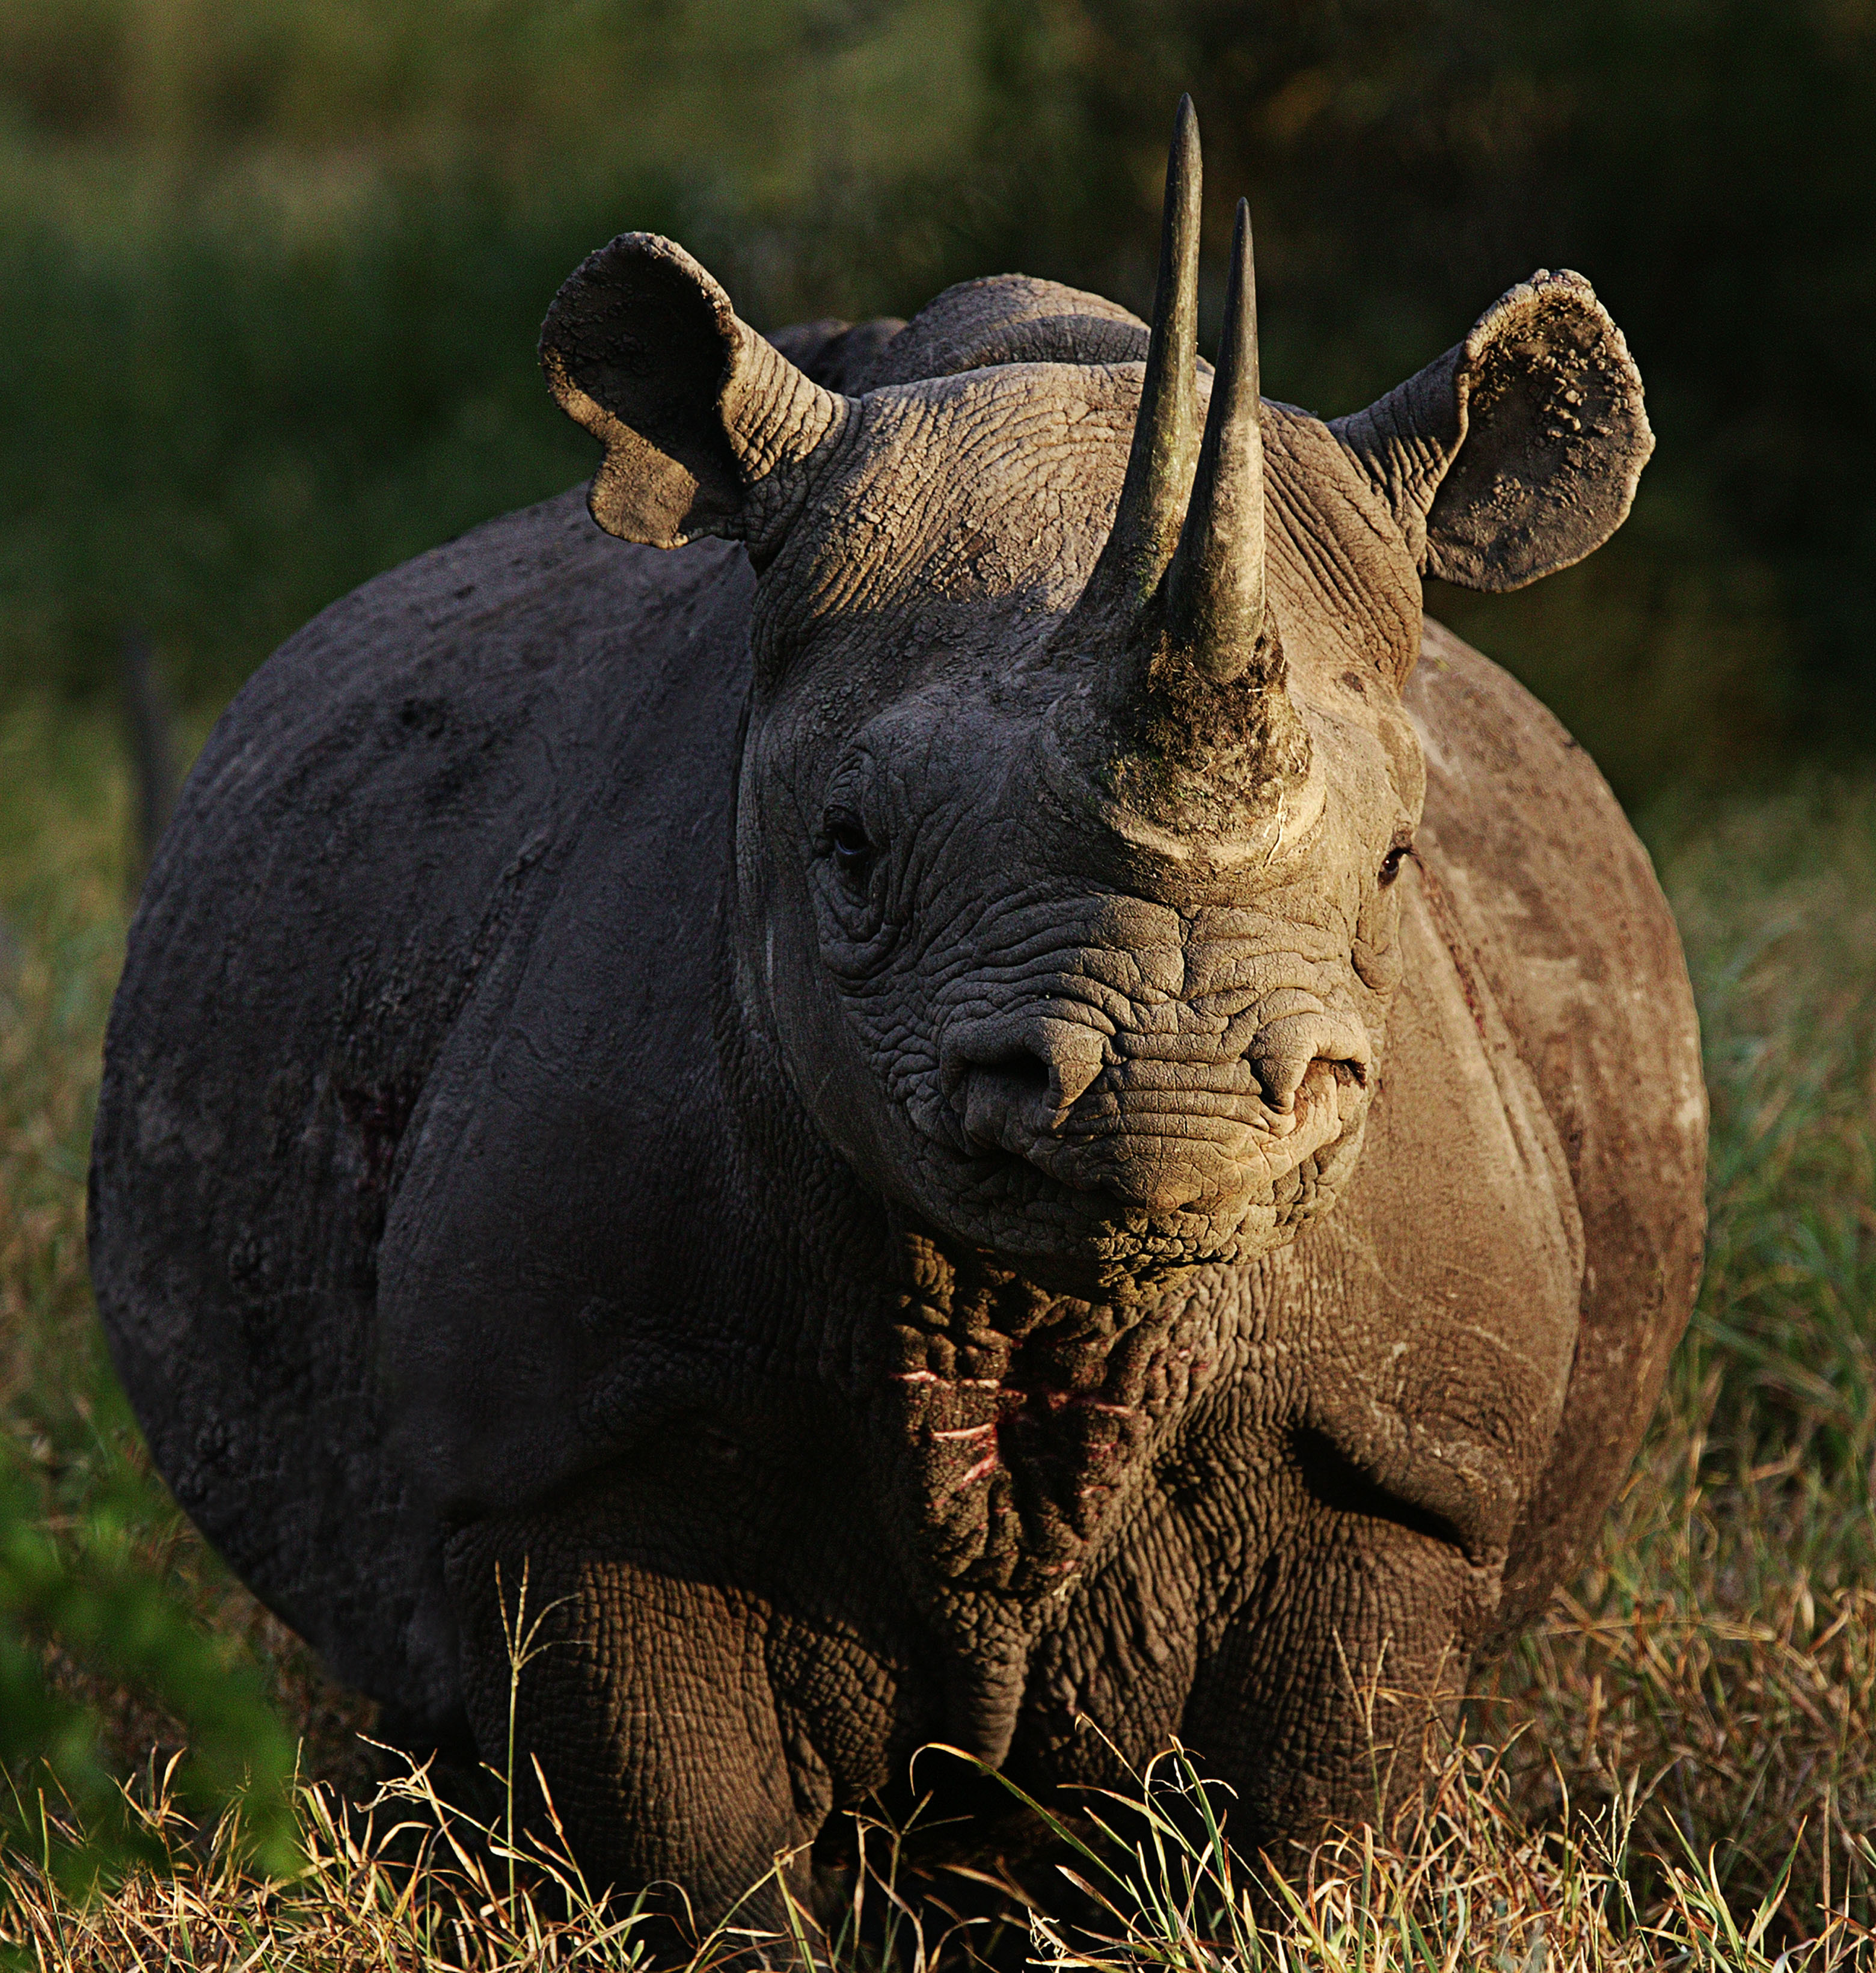 animals, rhinoceros - desktop wallpaper